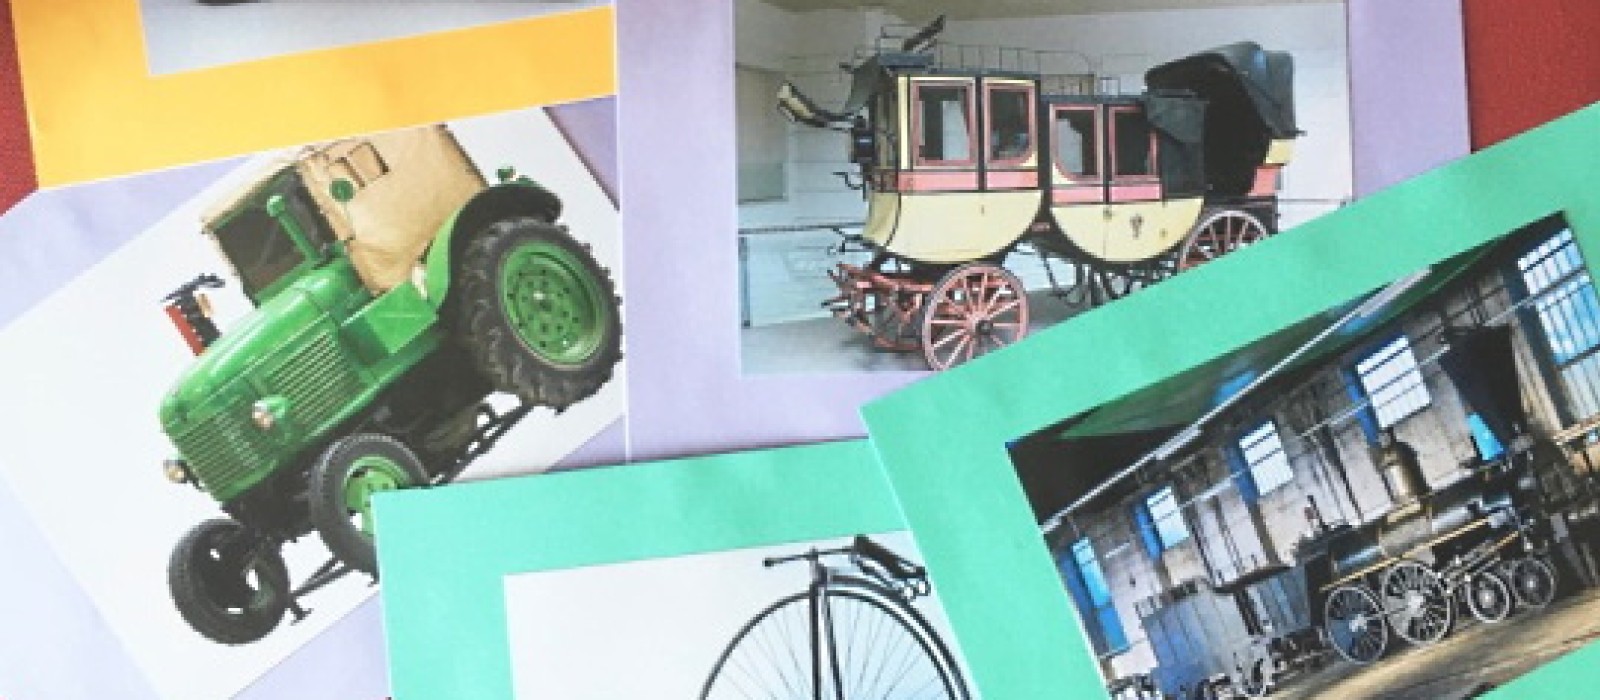 Verschiedene Fotos von Fahrzeugen aus der Ausstellung "Mobilität": 